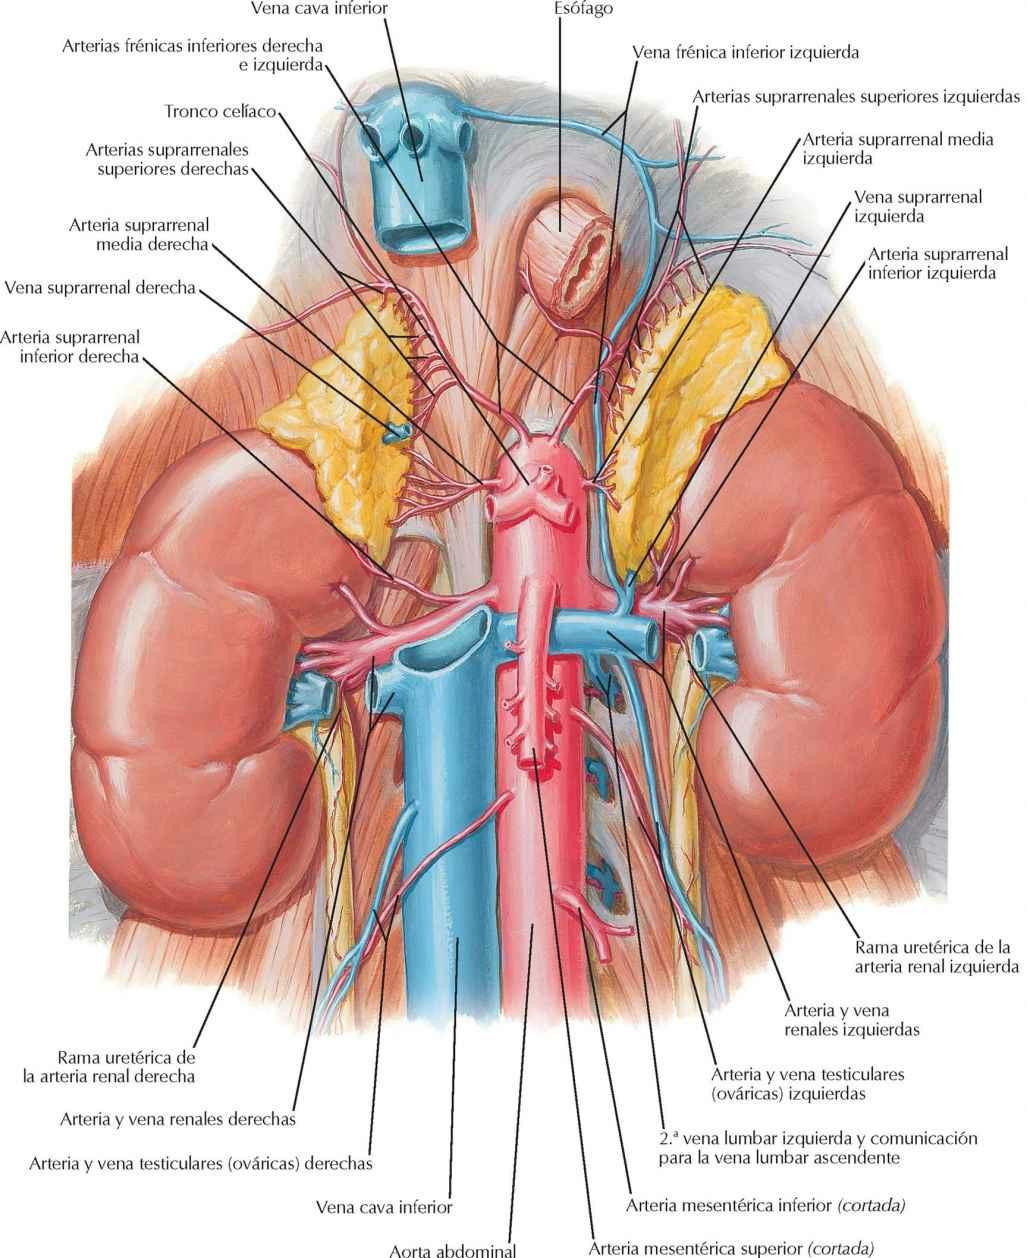 Arteria y vena renales in situ